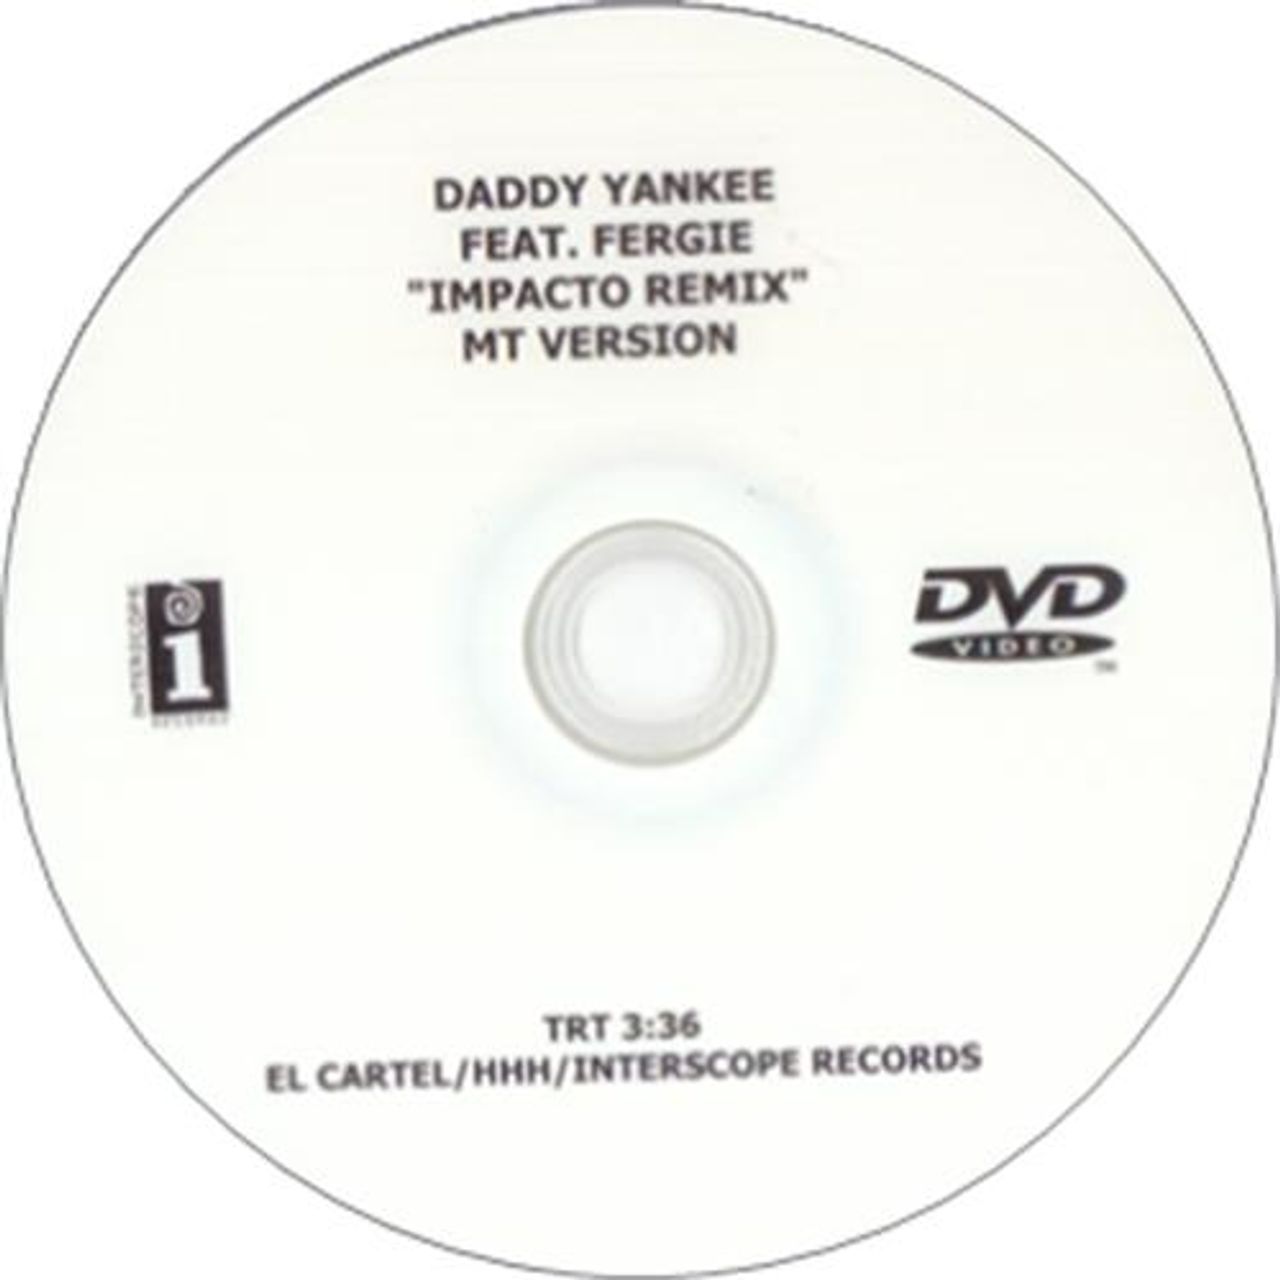 Fergie Impacto Remix - MT Version US Promo promo DVD-R DVD-R ACETATE